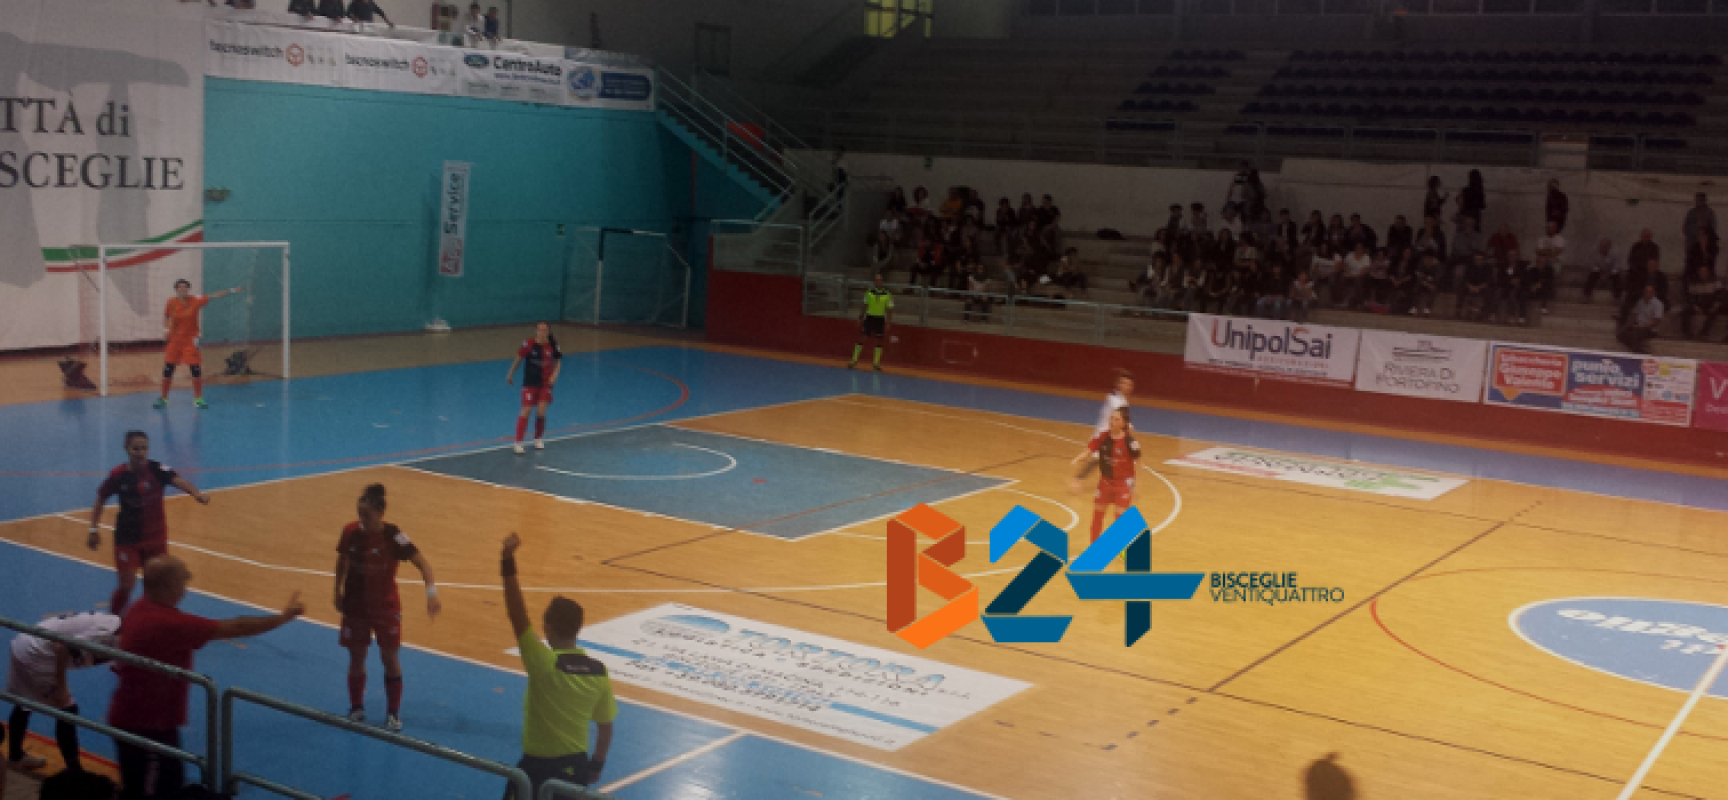 Arcadia ko contro Statte, manita del Futsal Bisceglie femminile / CLASSIFICHE